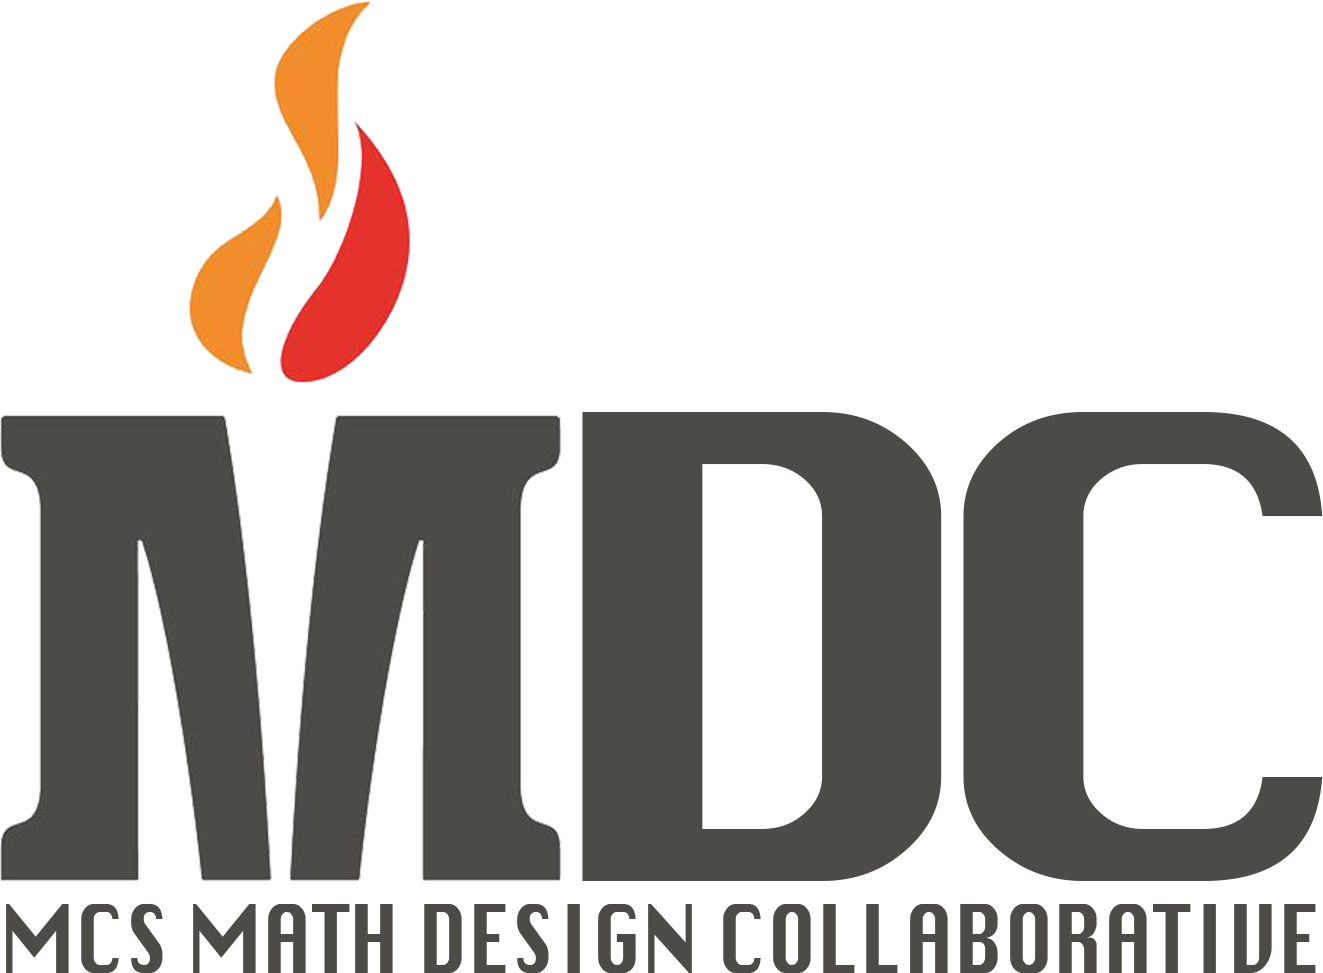 Math Design Collaborative Logo 